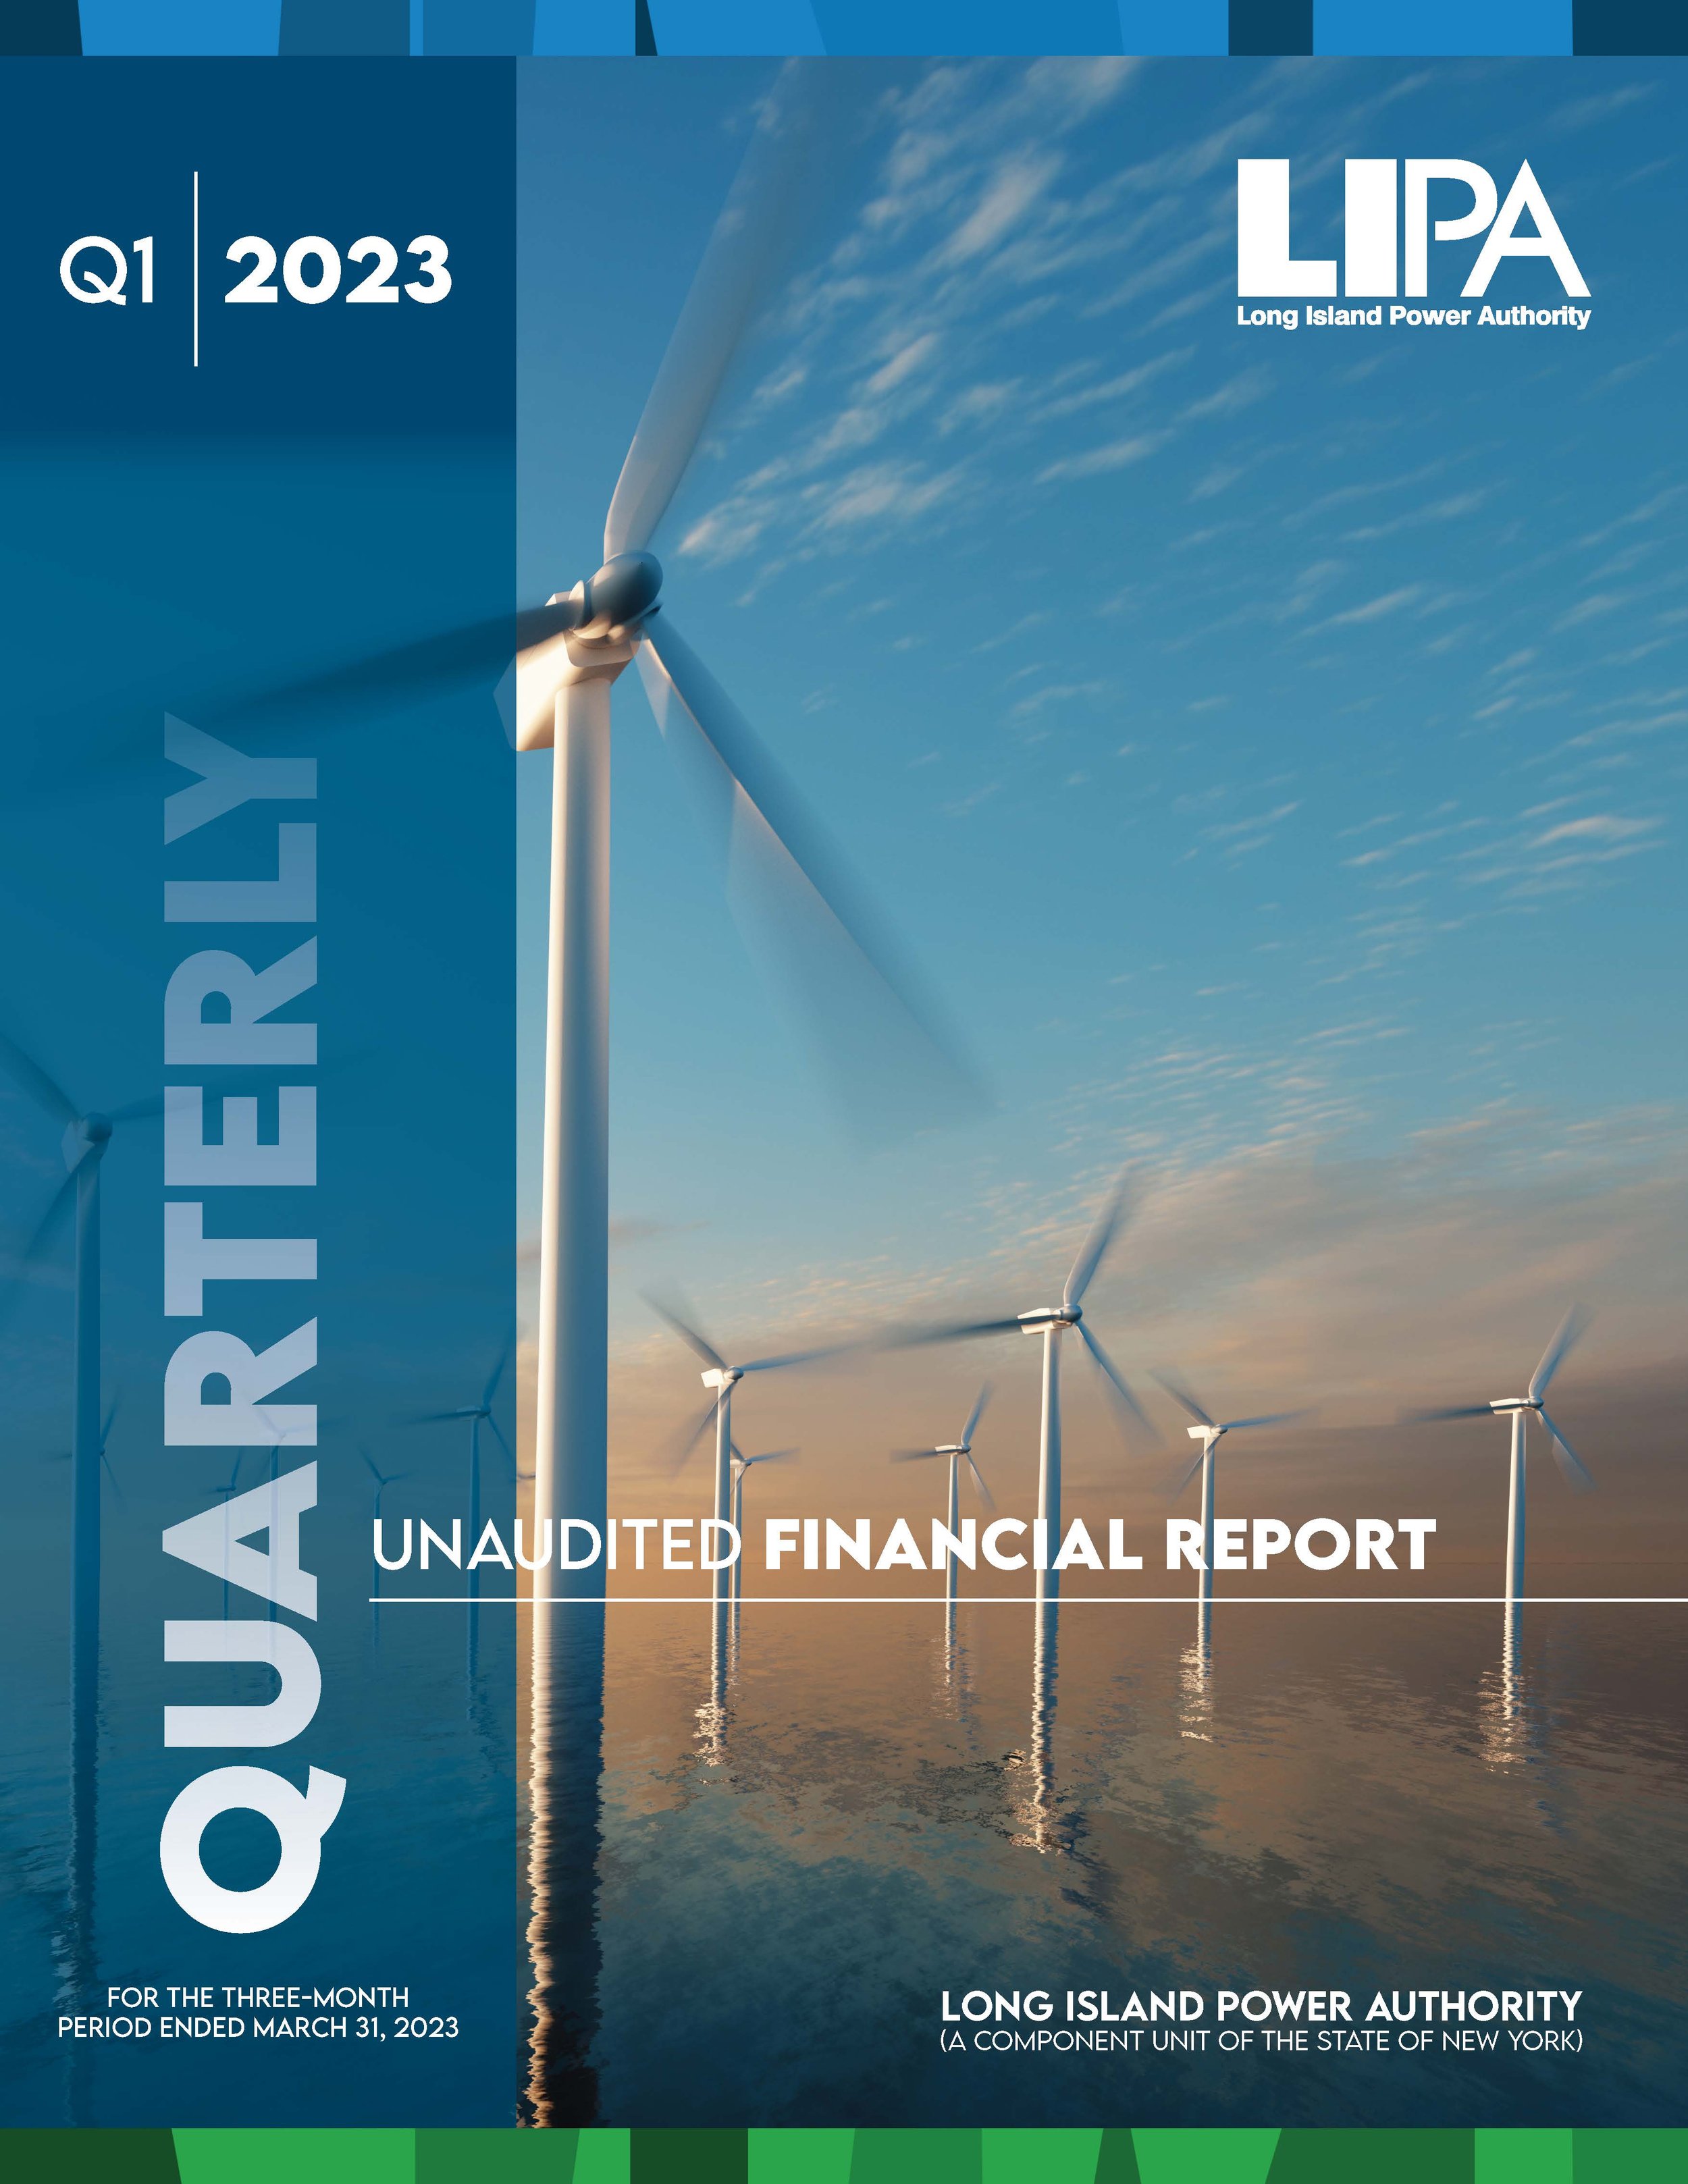 Q1 Financial Report